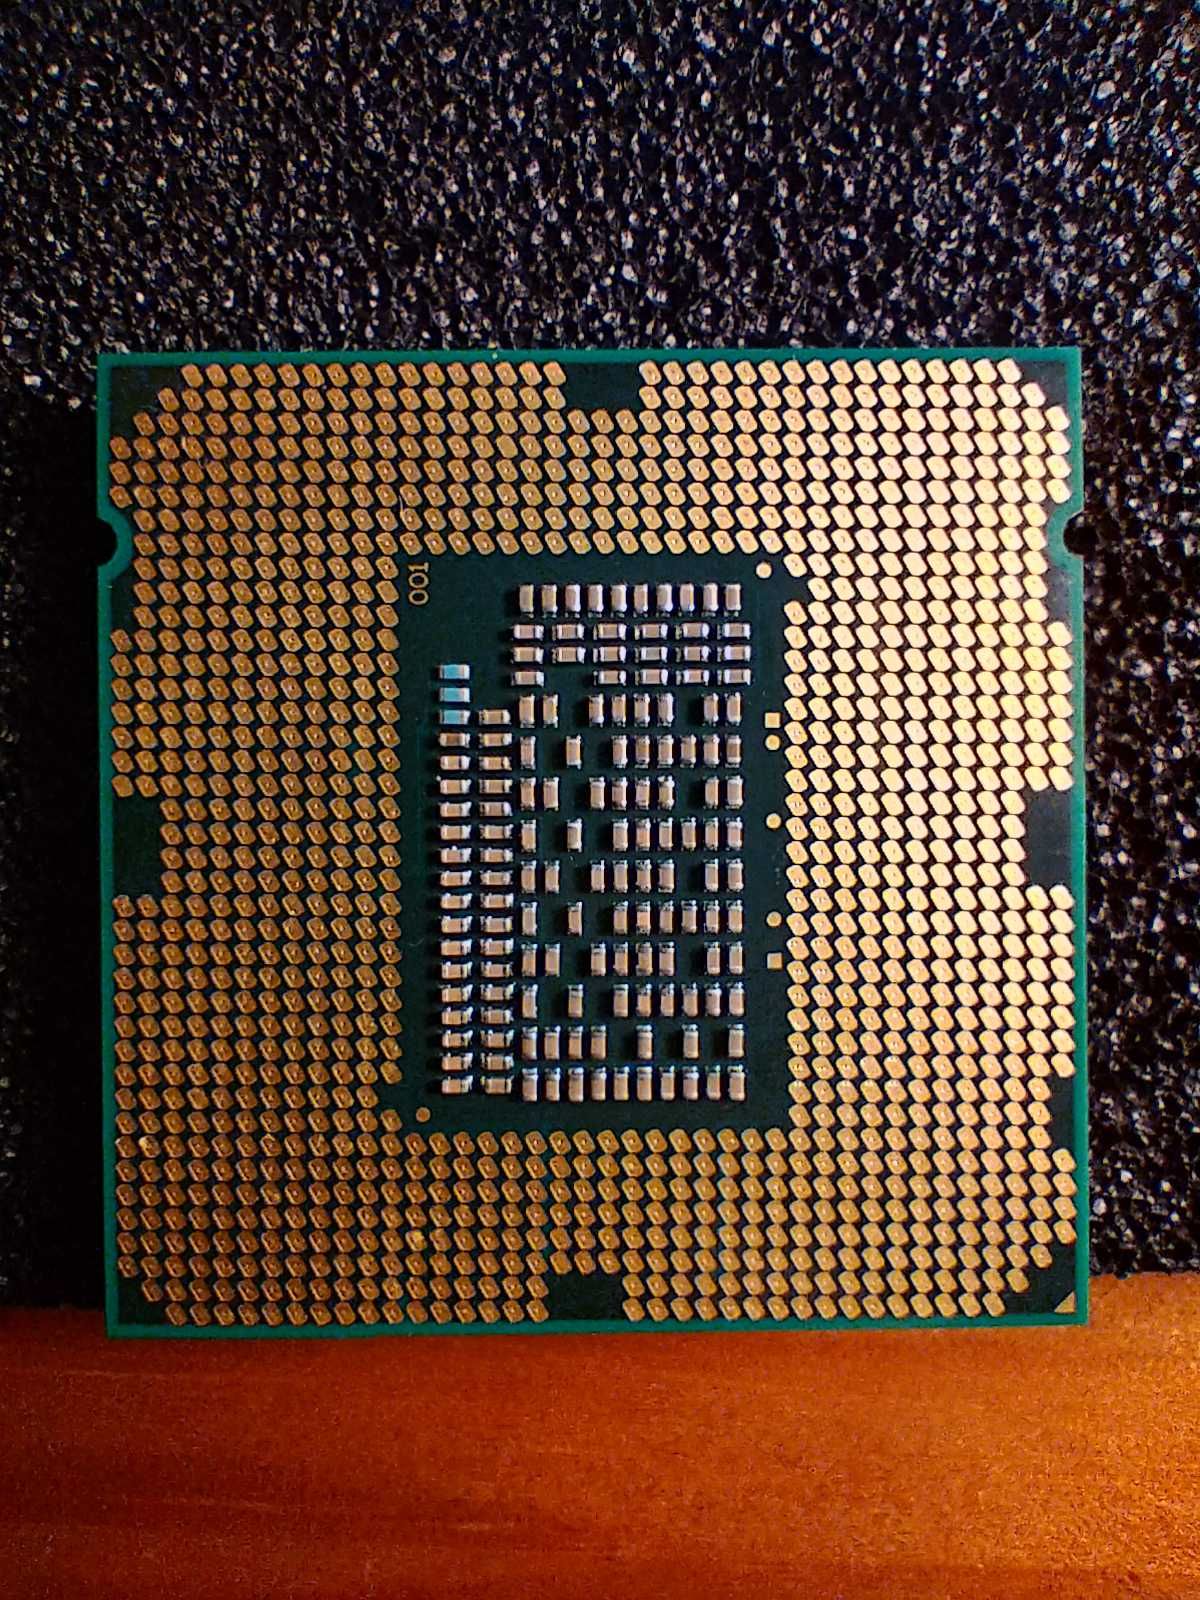 i5 2320 - Processador Intel